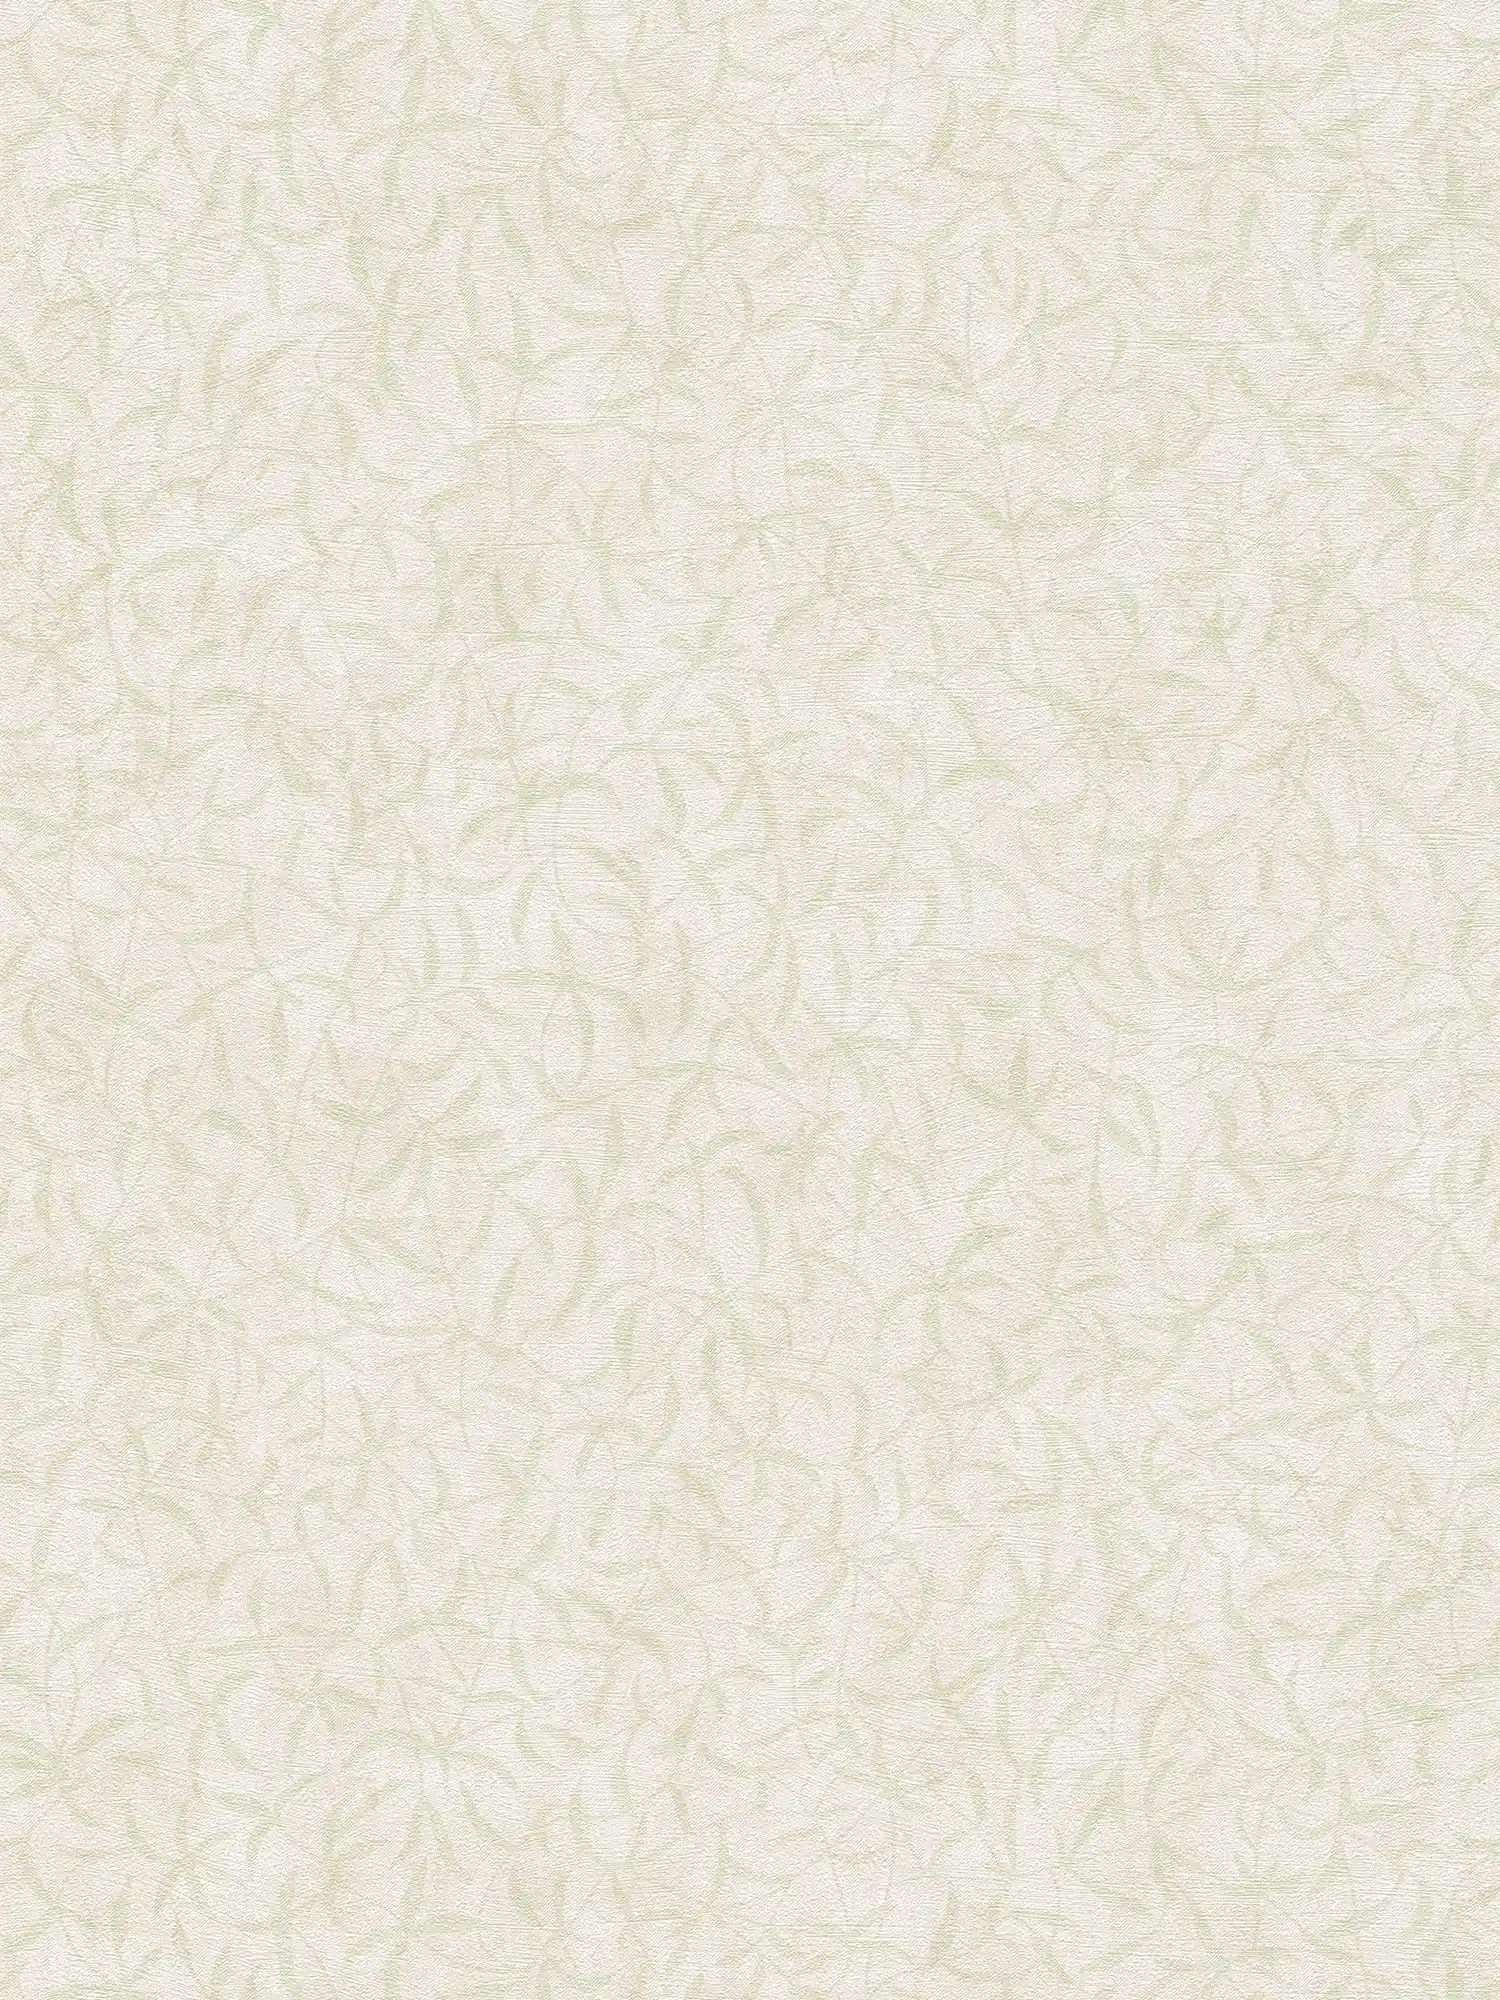 Vliesbehang bloemtakken met structuur - crème, groen
